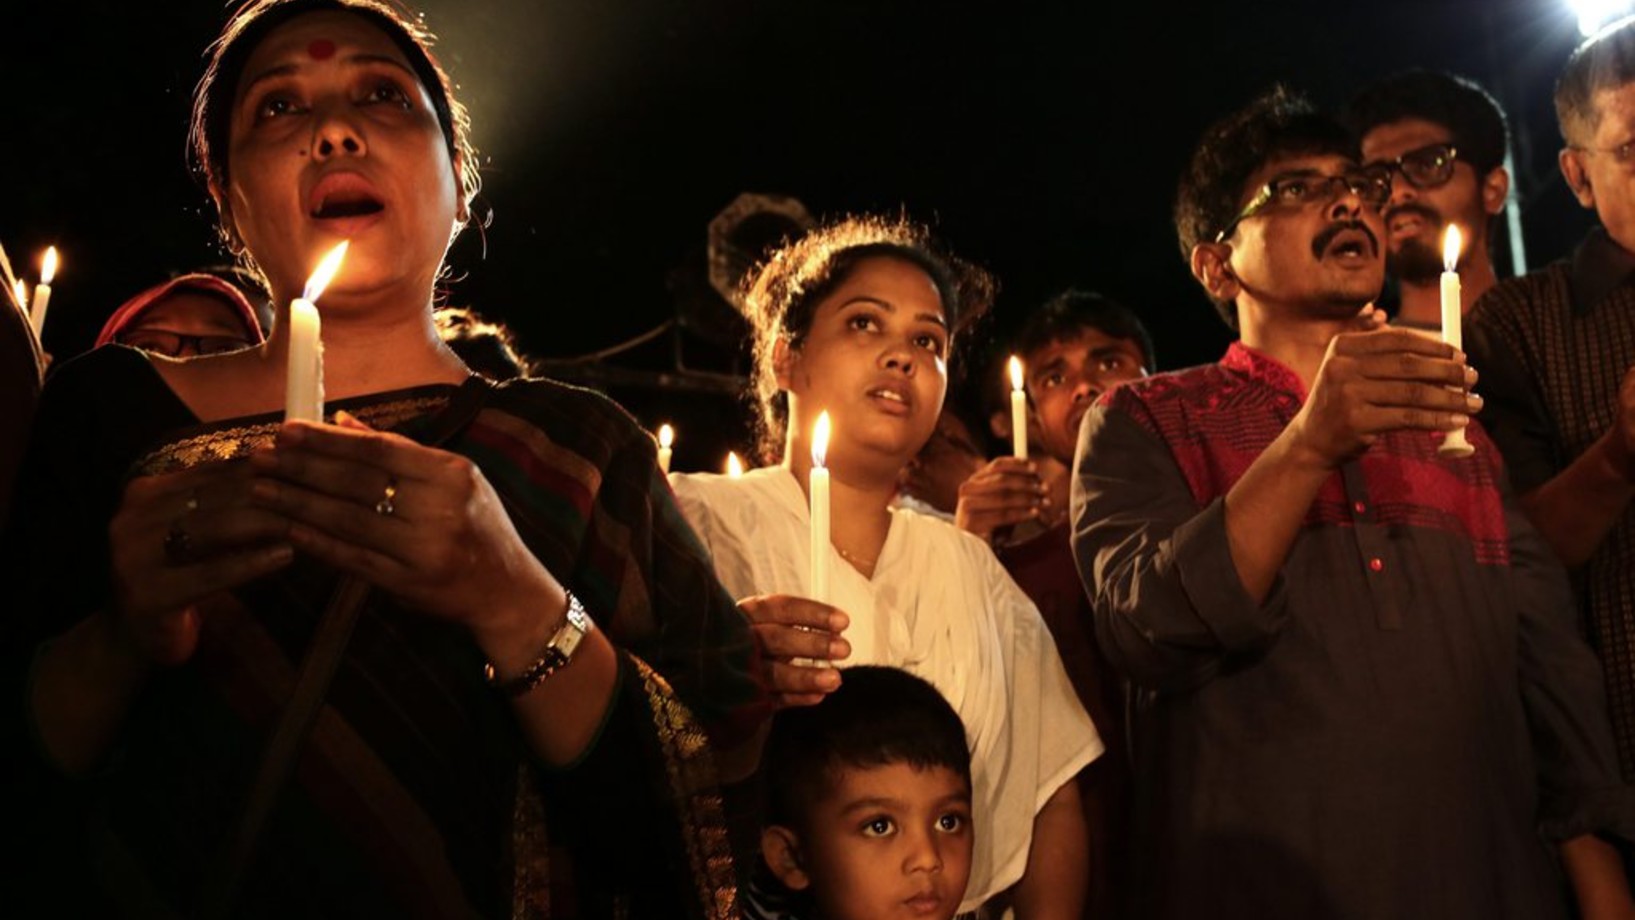 Trauer um die toten Geiseln in Dhaka (Foto: Keystone/EPA/Str)